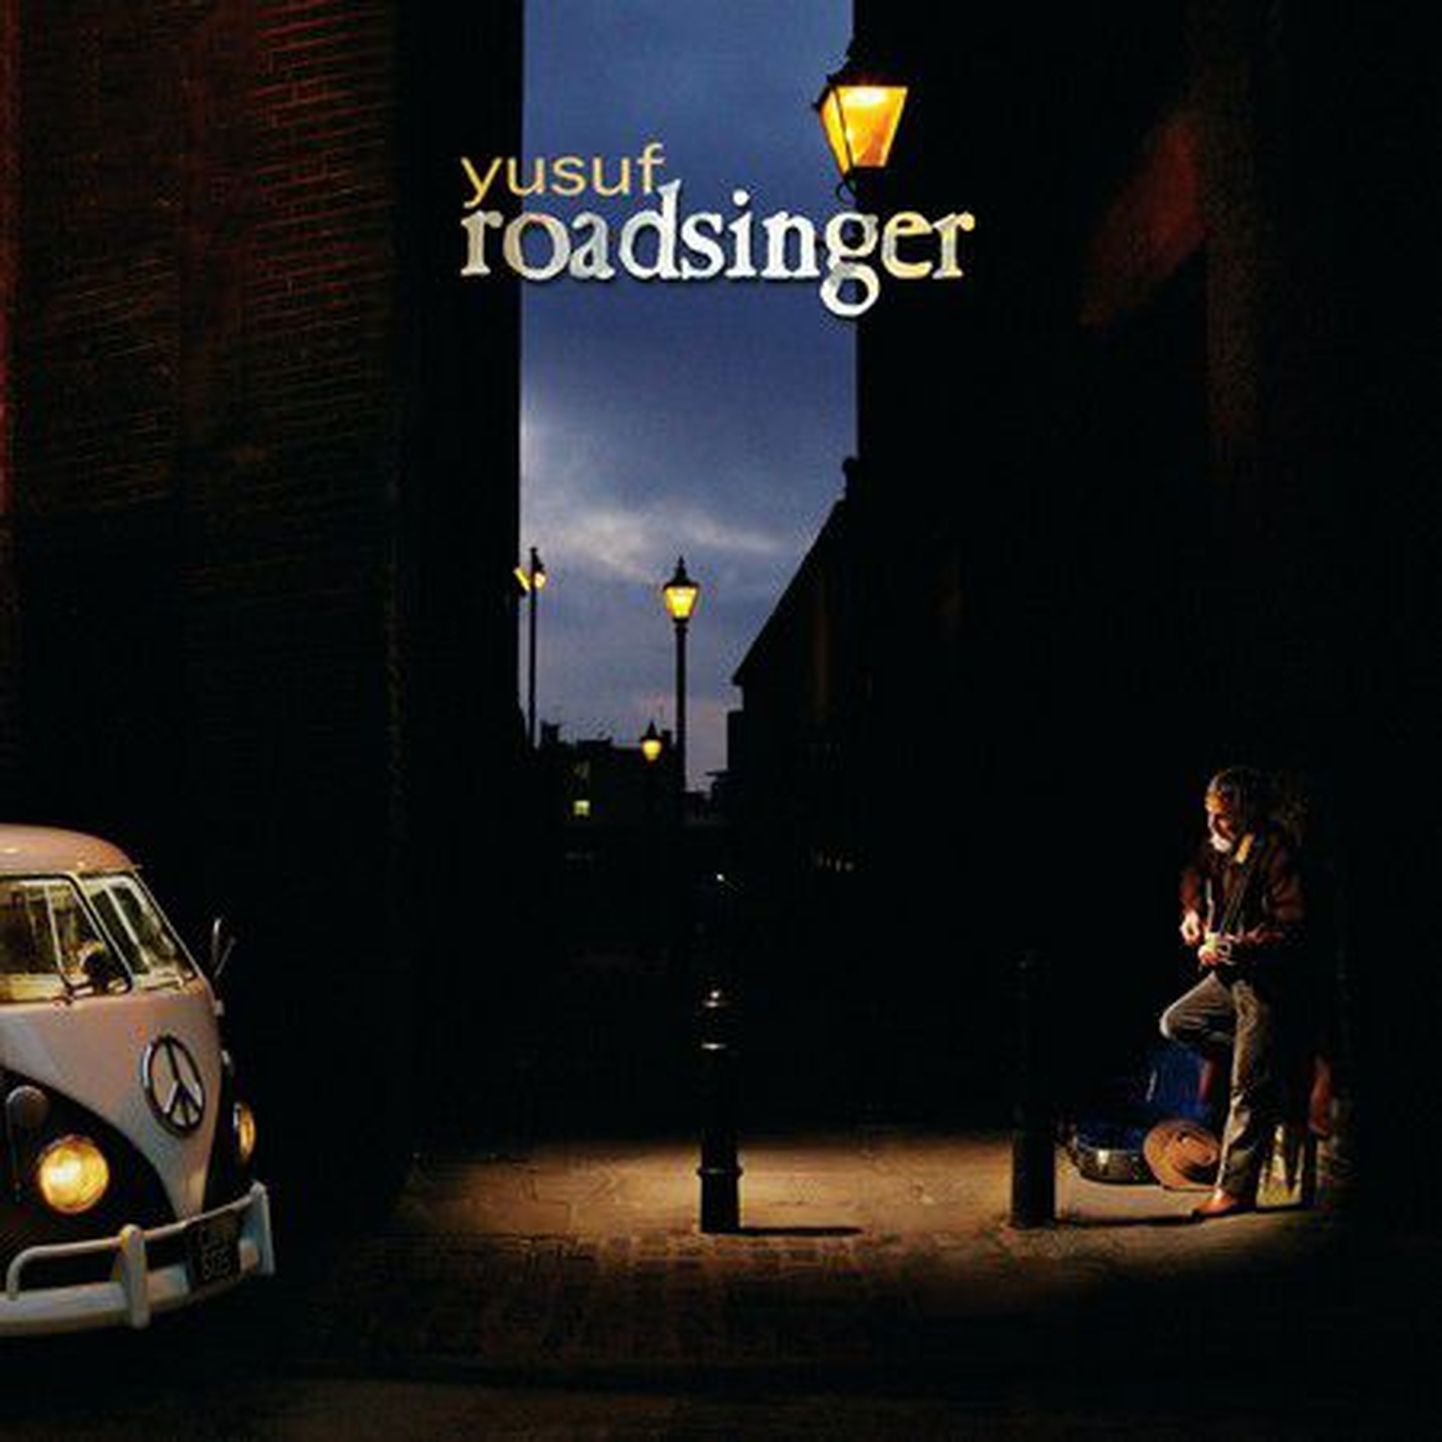 Yusuf “Roadsinger”.